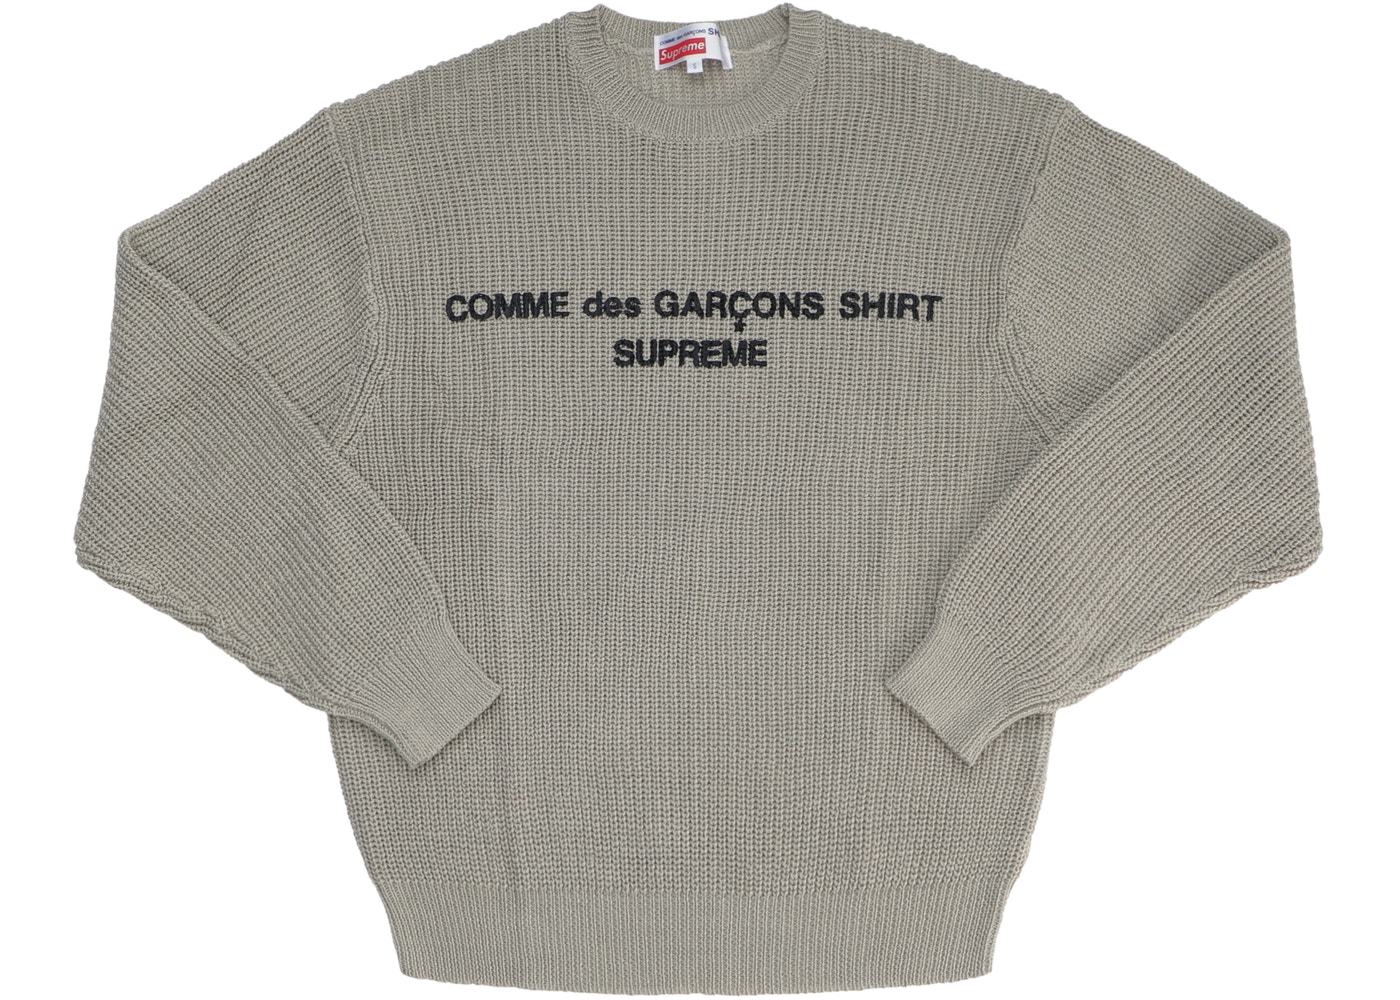 Supreme Comme des Garcons SHIRT Sweater Tan